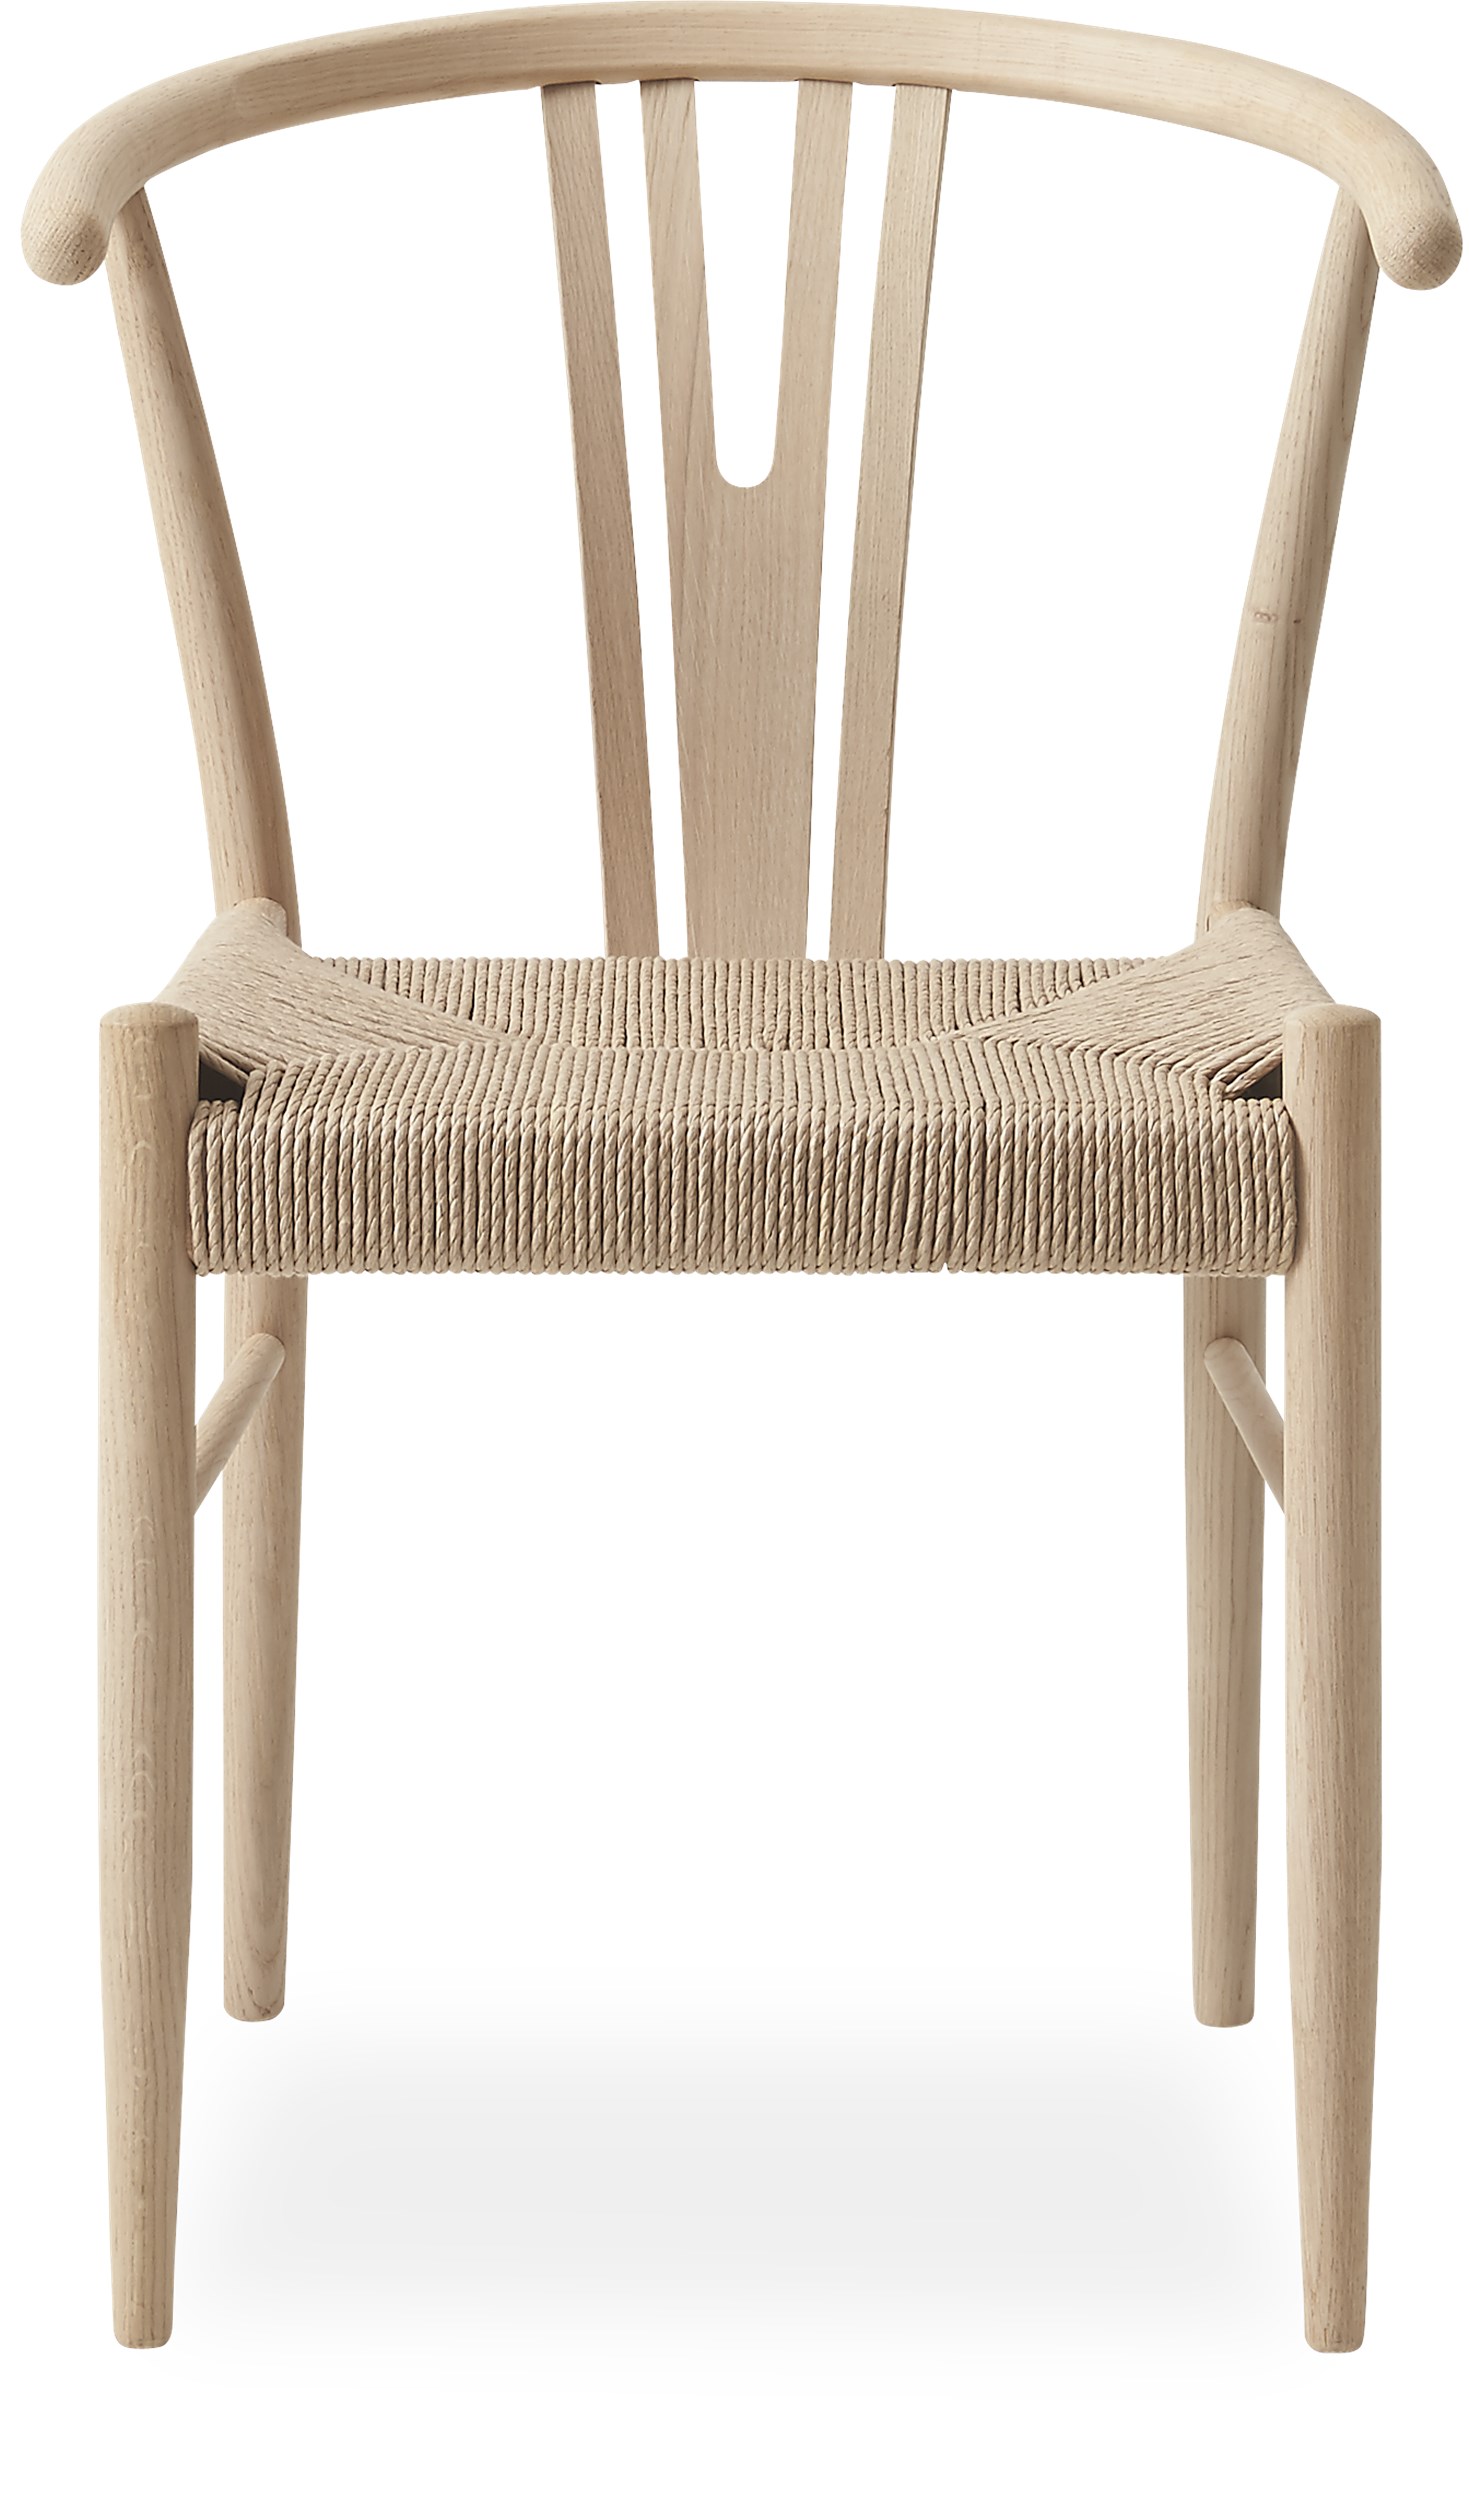 Flet | Se udvalget af moderne fletstole | ILVA